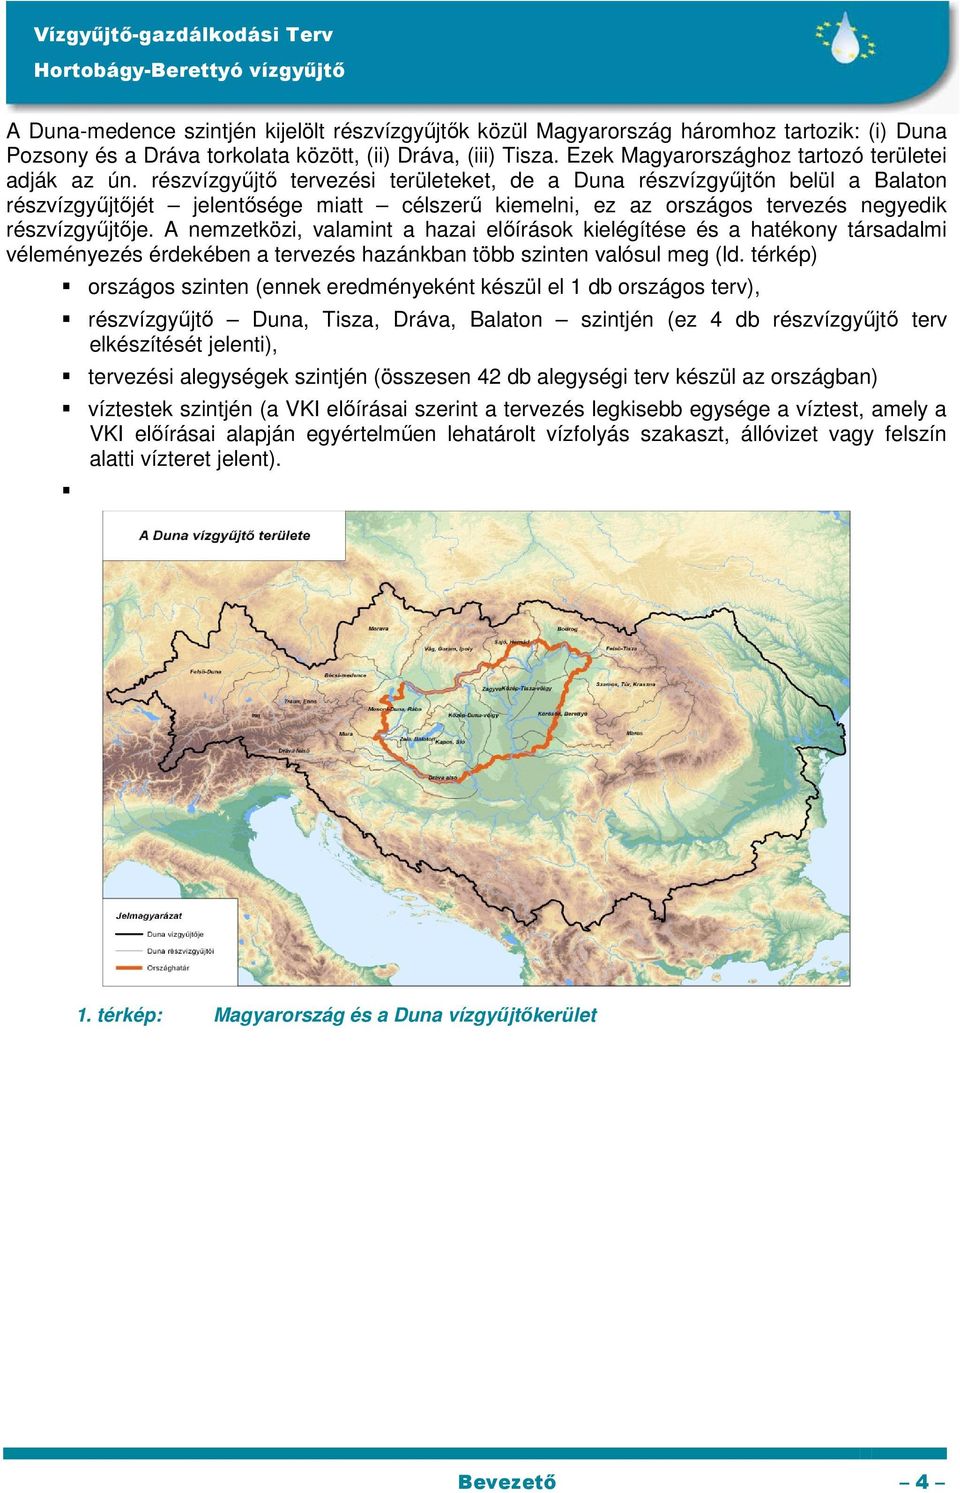 részvízgyőjtı tervezési területeket, de a Duna részvízgyőjtın belül a Balaton részvízgyőjtıjét jelentısége miatt célszerő kiemelni, ez az országos tervezés negyedik részvízgyőjtıje.